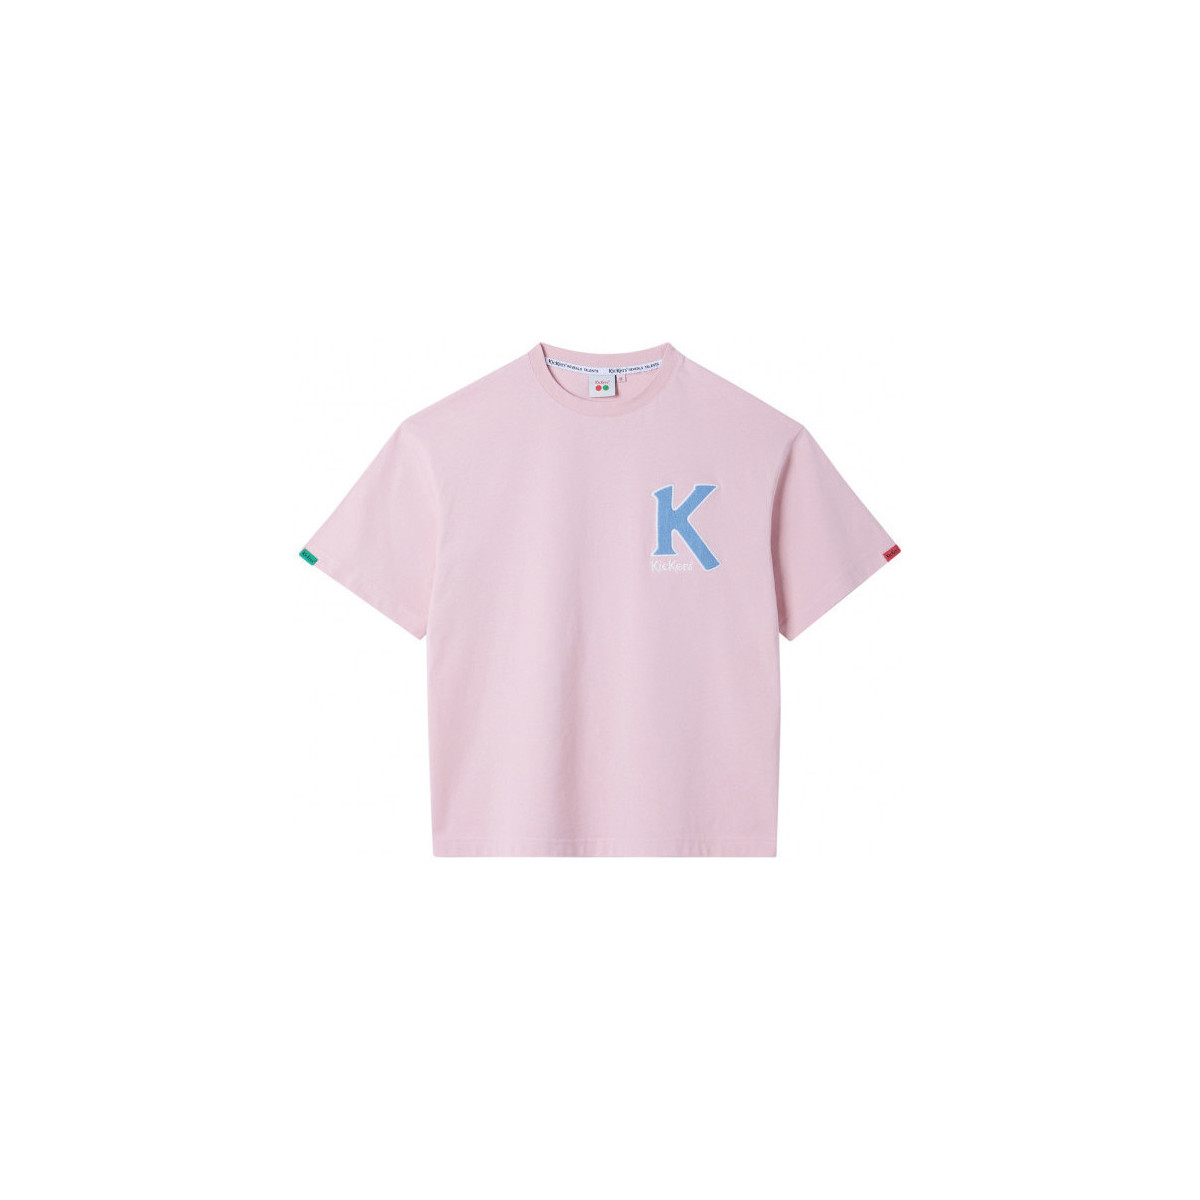 Oblečenie Tričká a polokošele Kickers Big K T-shirt Ružová